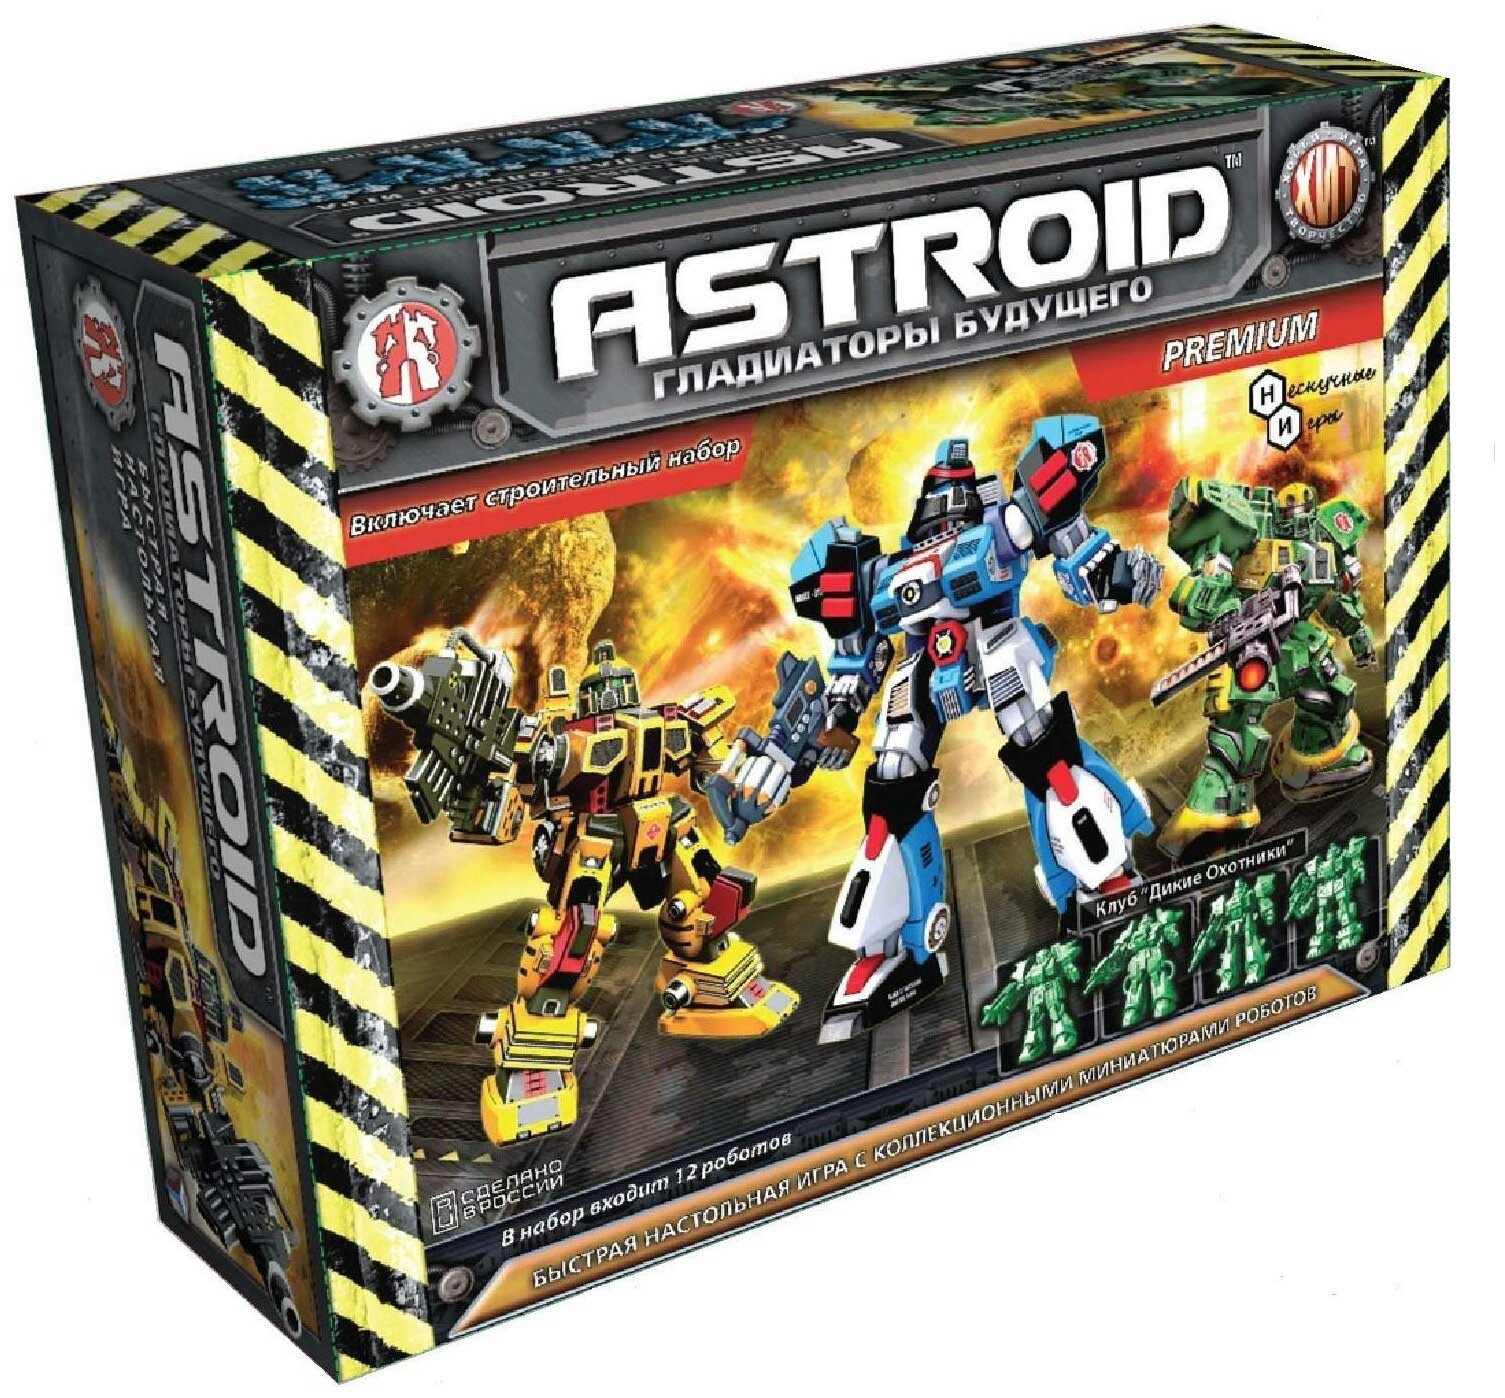 Игровой набор Технолог ASTROID. Premium арт.00359 игровой набор astroid гладиаторы будущего premium